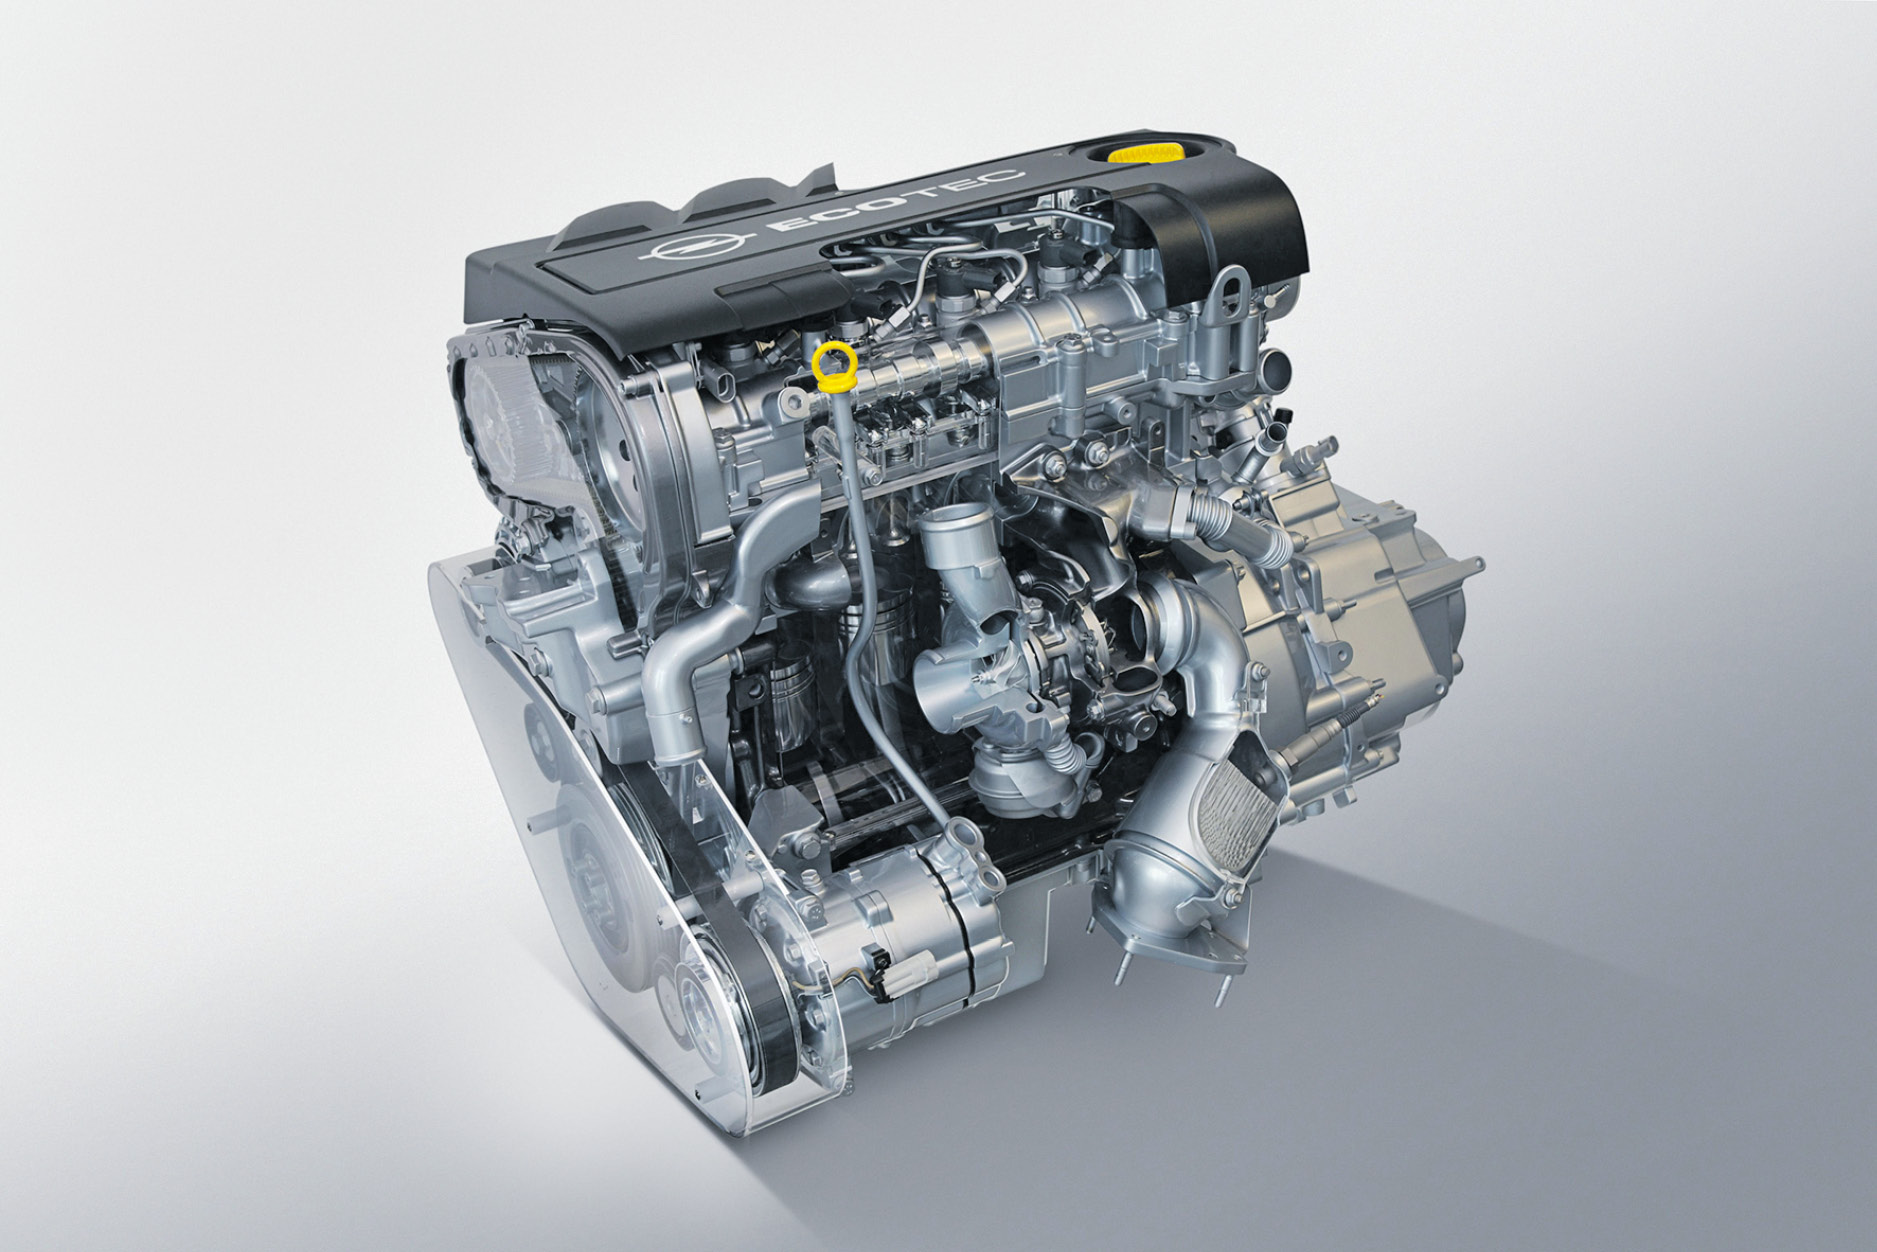 Купить дизельный двигатель 1. Opel 1.9 CDTI мотор. Дизельные двигатели 1.9 CDTI Опель. Двигатель Multijet 2.0 дизель.